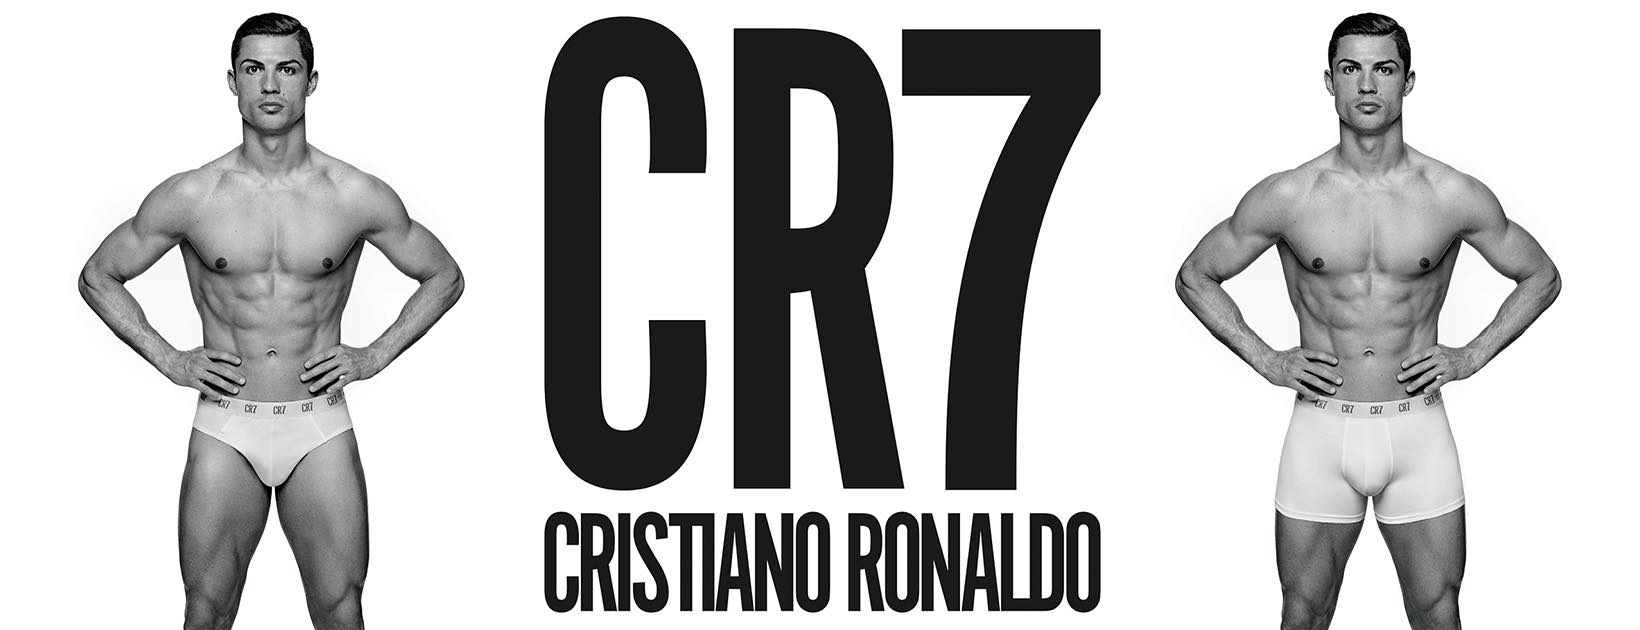 Marca de lingerie defende publicamente Cristiano Ronaldo